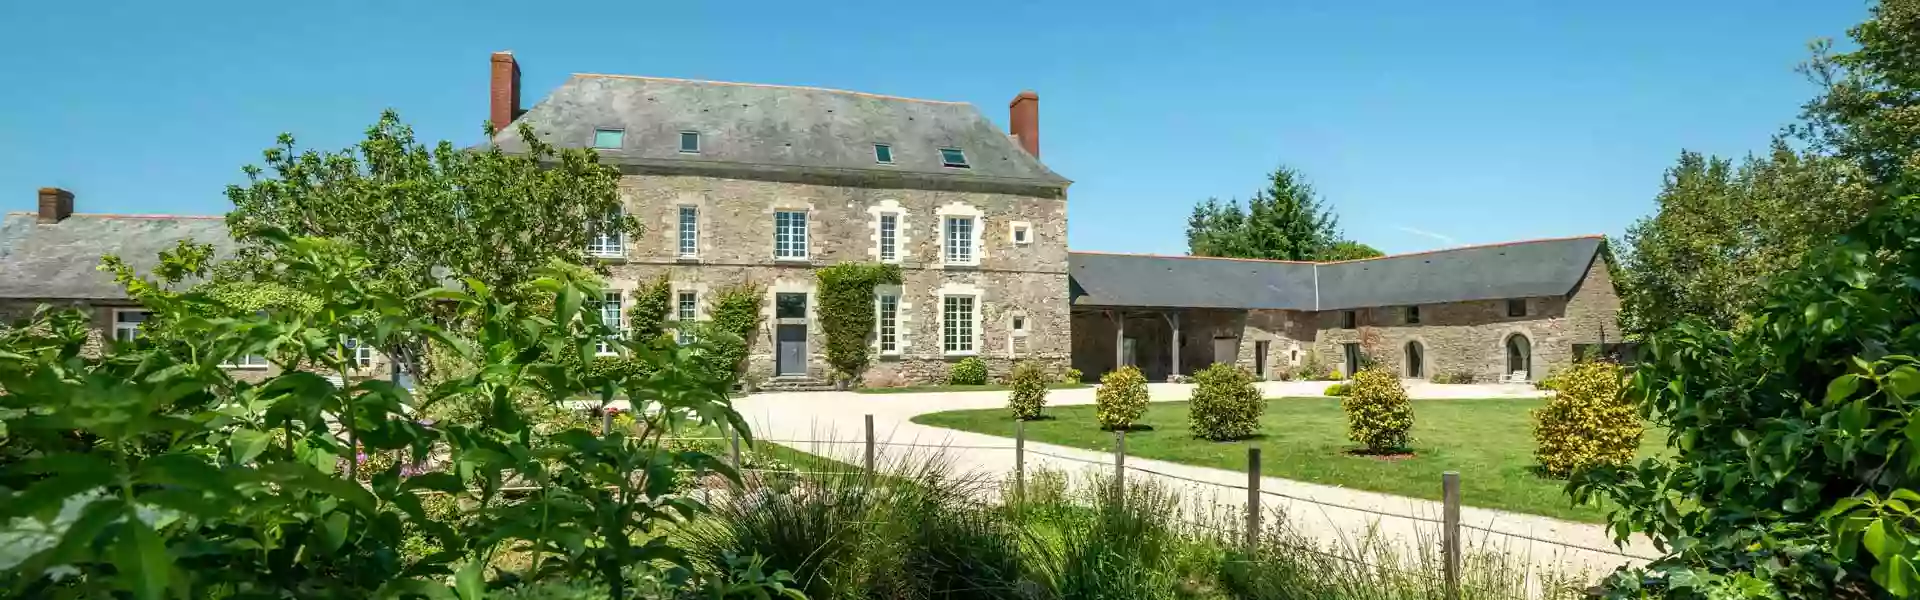 Château De La Garnison : Chambre d’Hôtes, salles de réception & séminaire à la campagne à Orvault proche de Nantes